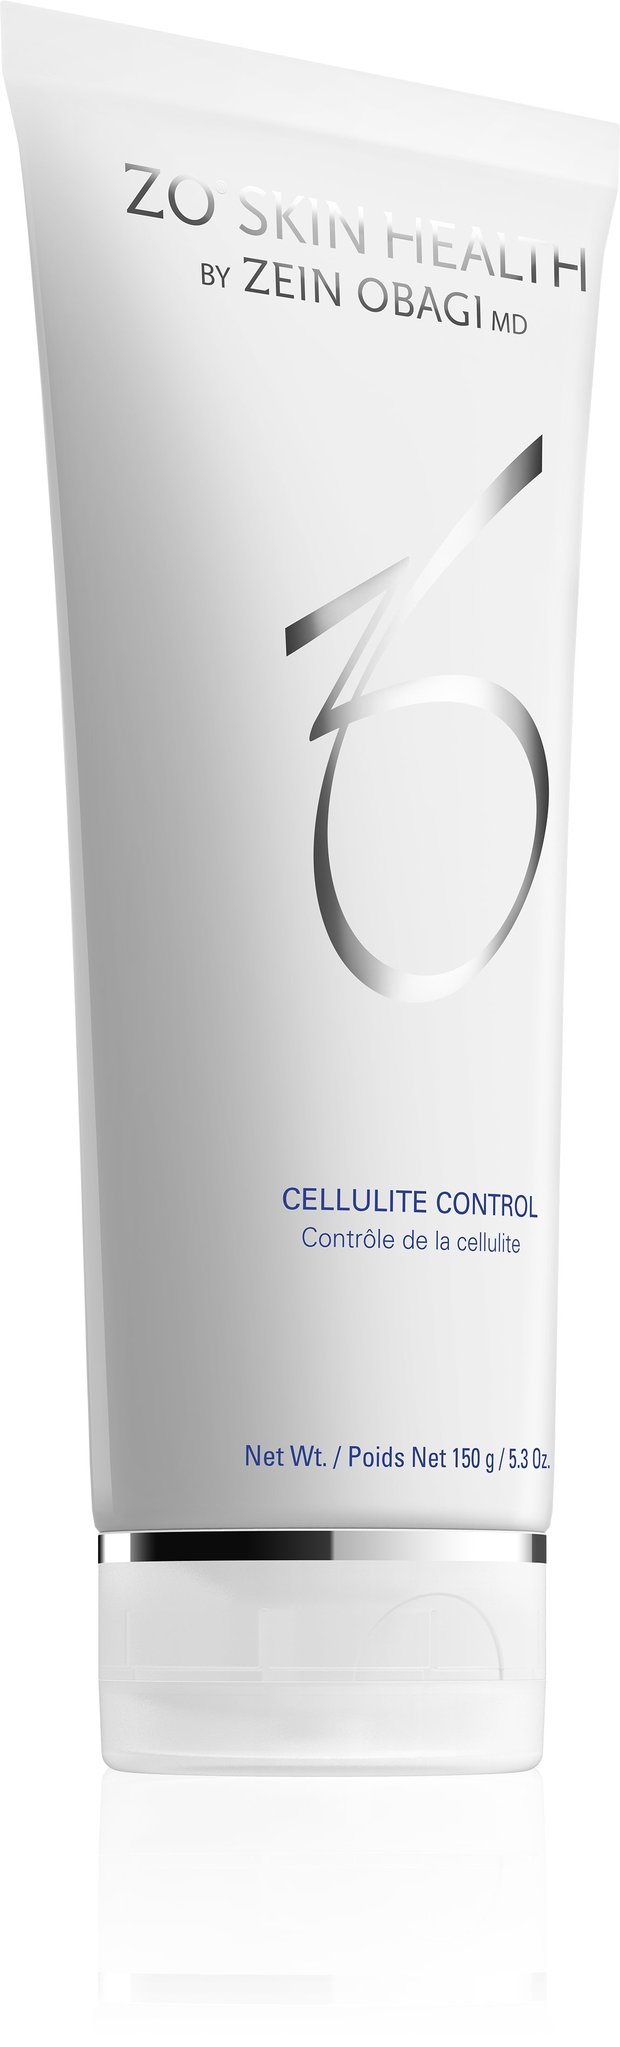 Cellulite Control